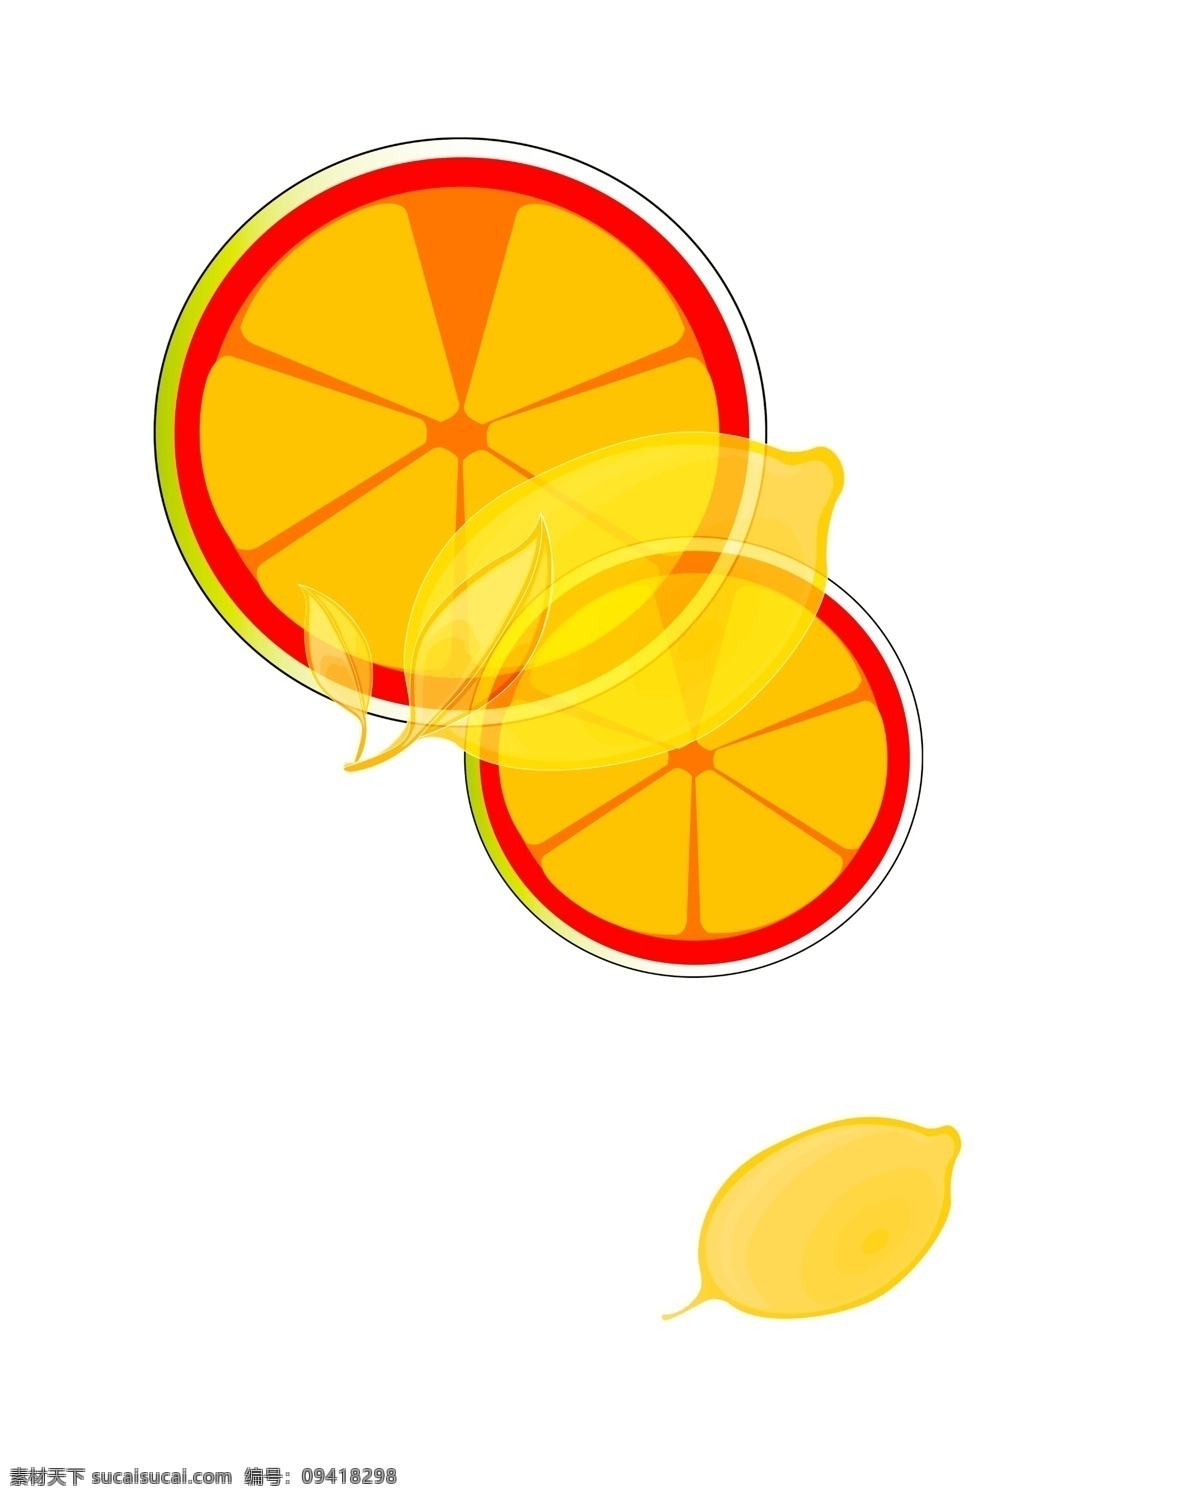 水果创意元素 水果手绘 卡通水果 橙子 水果创意 水果装饰图 设计元素